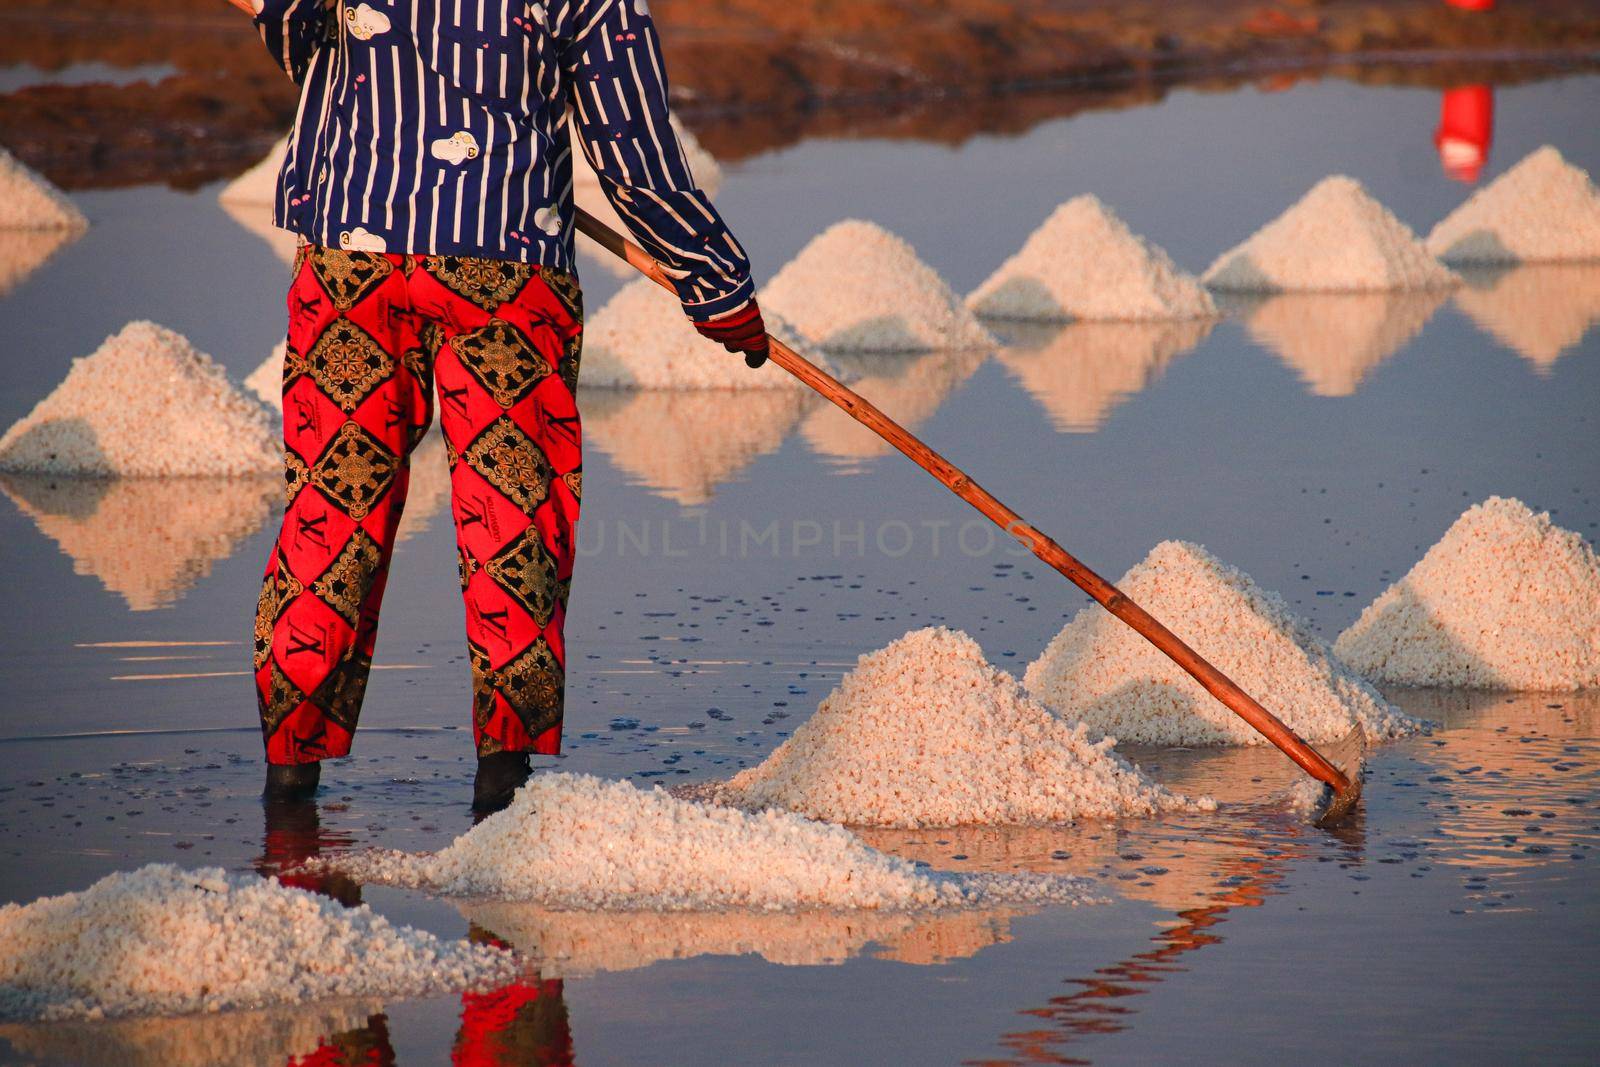 A Slatfield Worker Harvesting Salt by Sonnet15